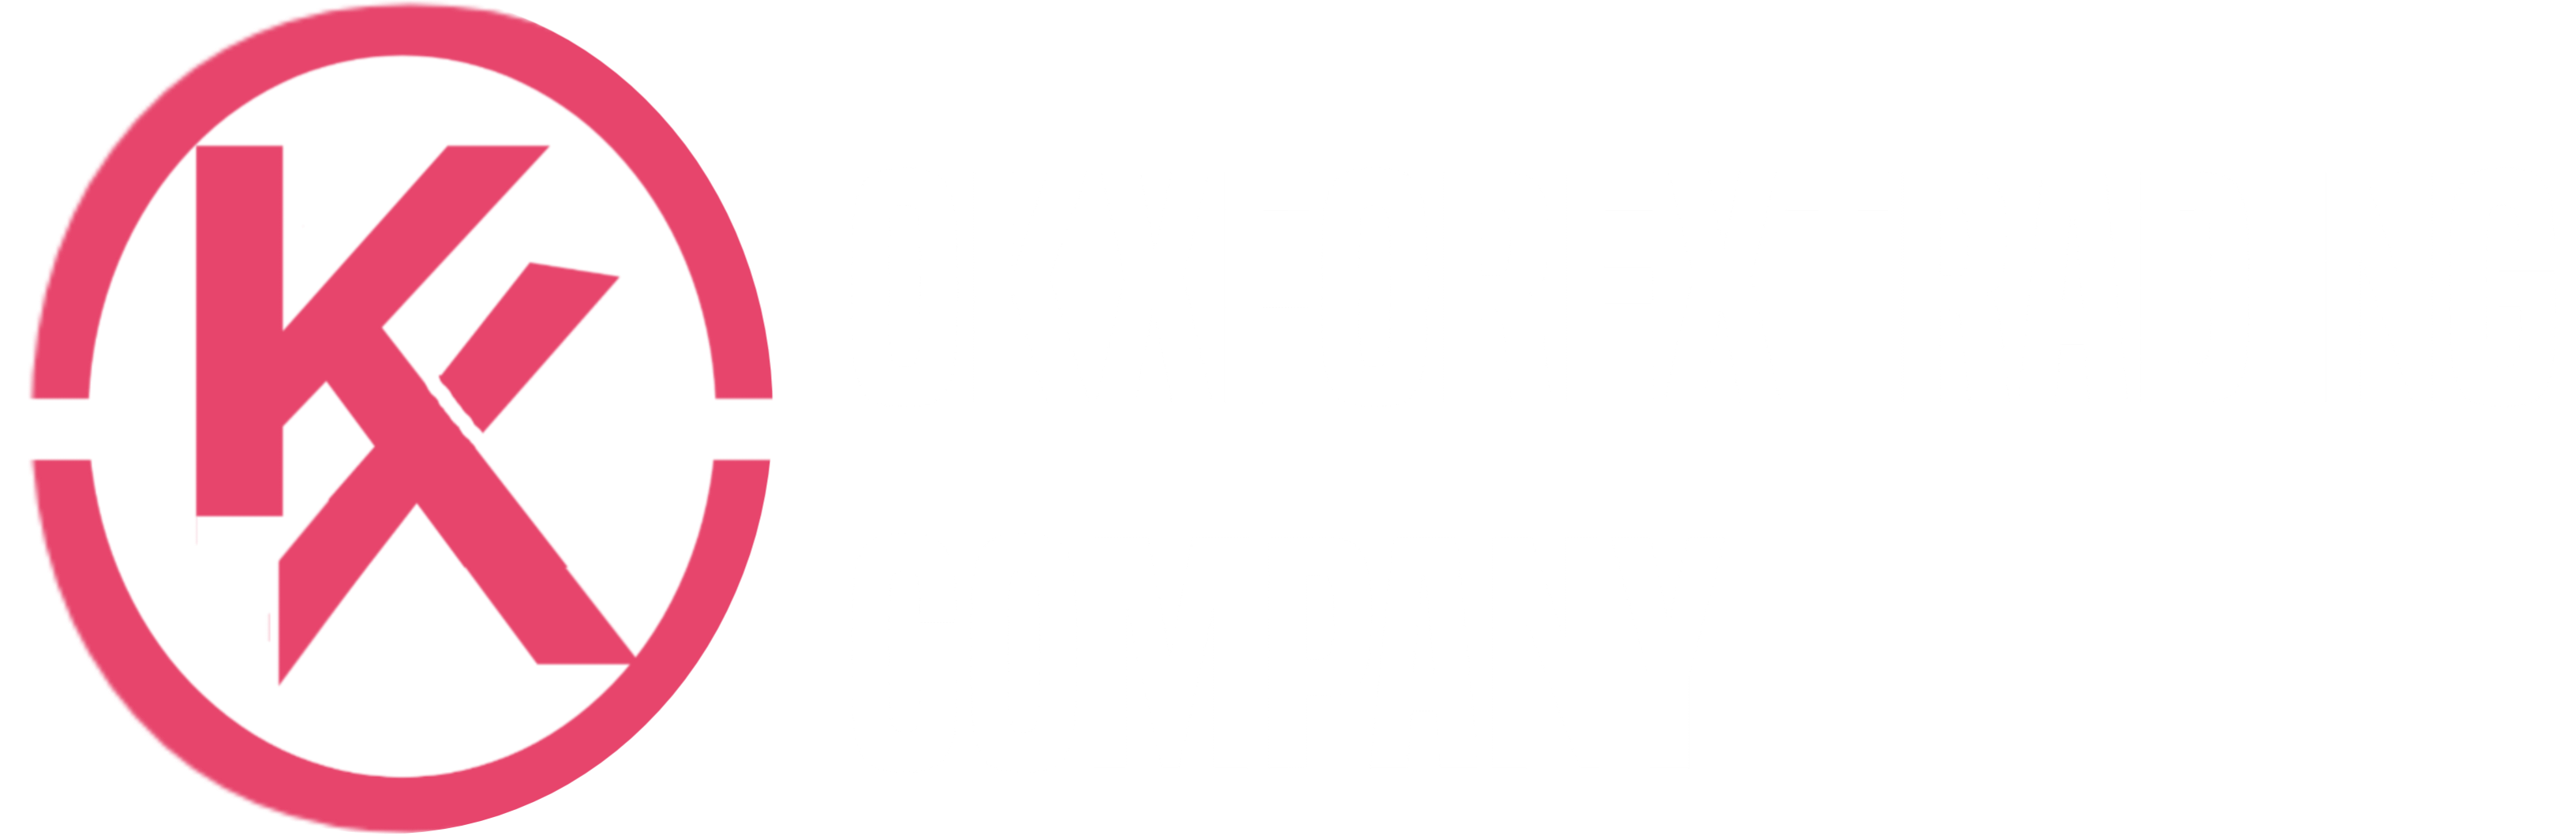 okxforextradingcompany.com